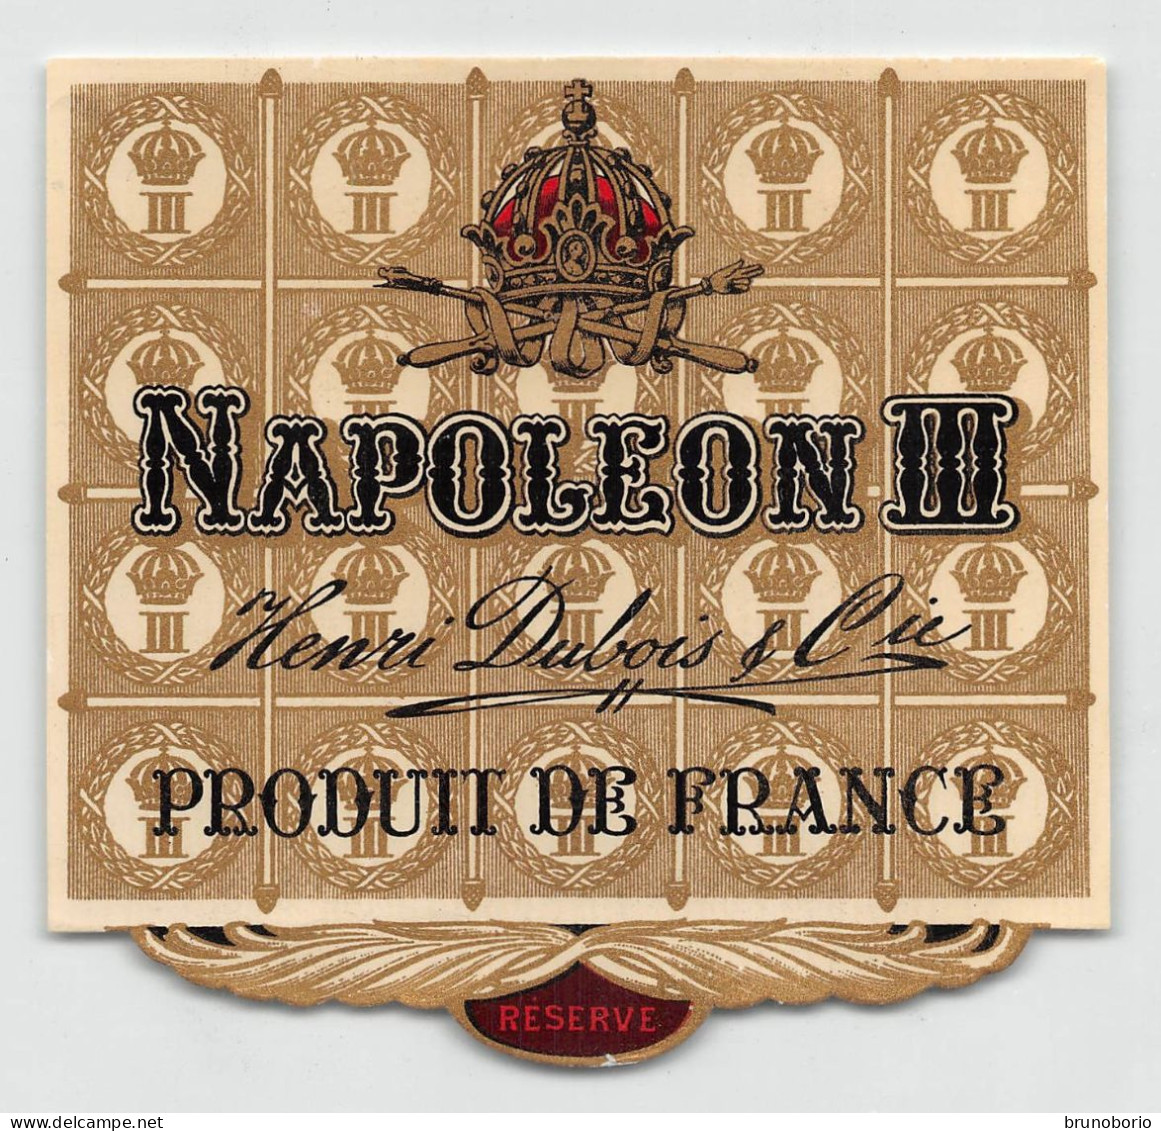 00049 "NAPOLEON III - ENRI DUBOIS & CIE - PRODUIT DE FRANCE" ETICH. ORIG. - Alcoholes Y Licores